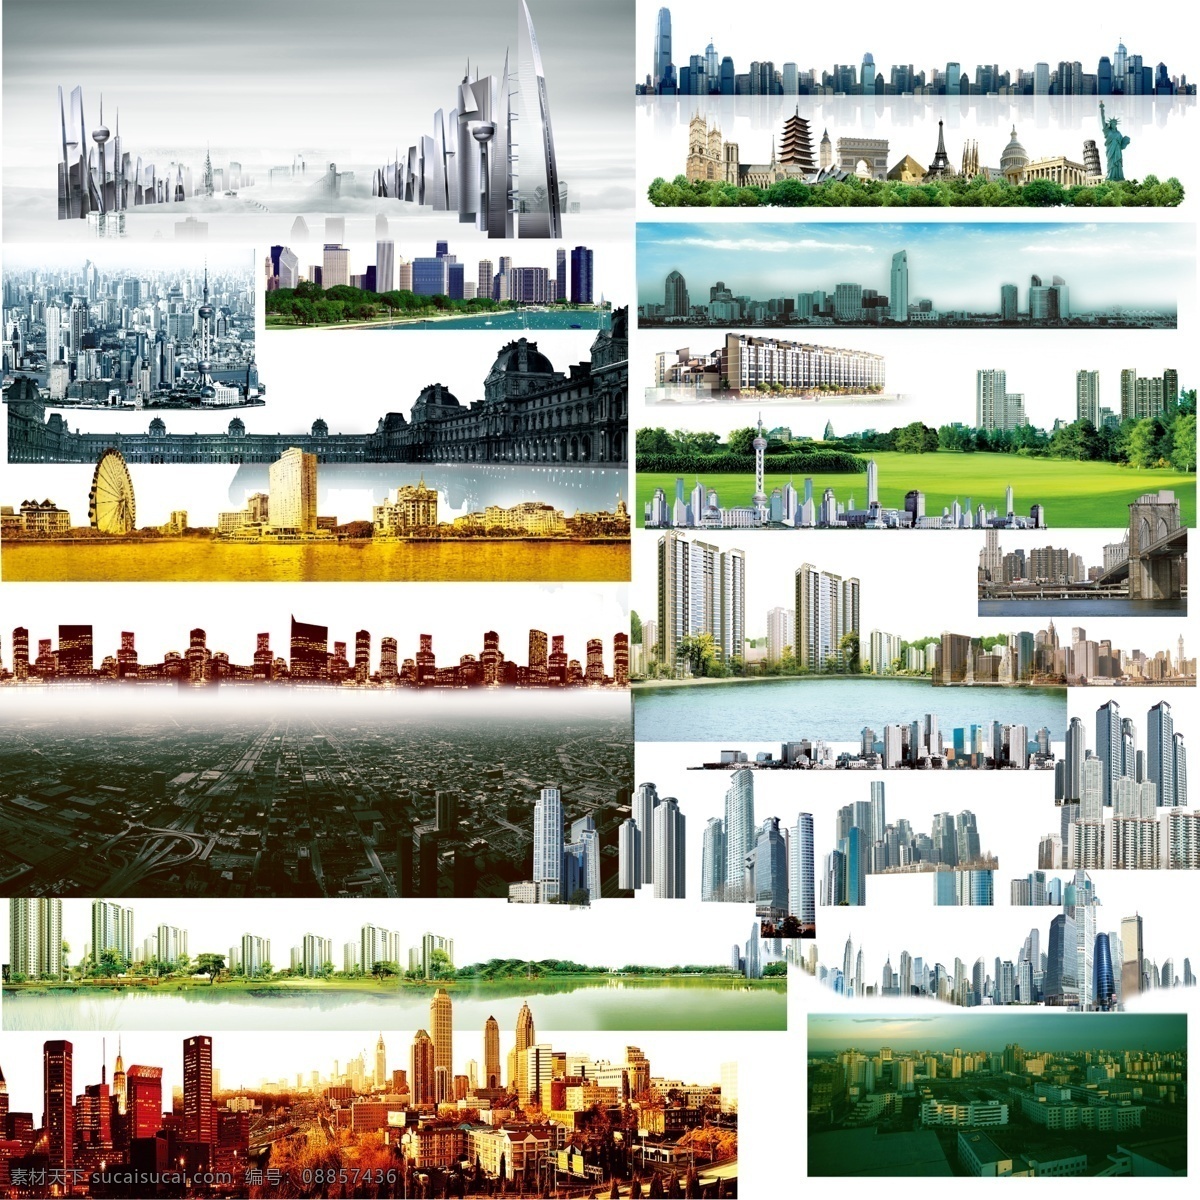 世界 著名 城市标志 建筑 世界著名建筑 建筑地标 著名地标 建筑设计 环境设计